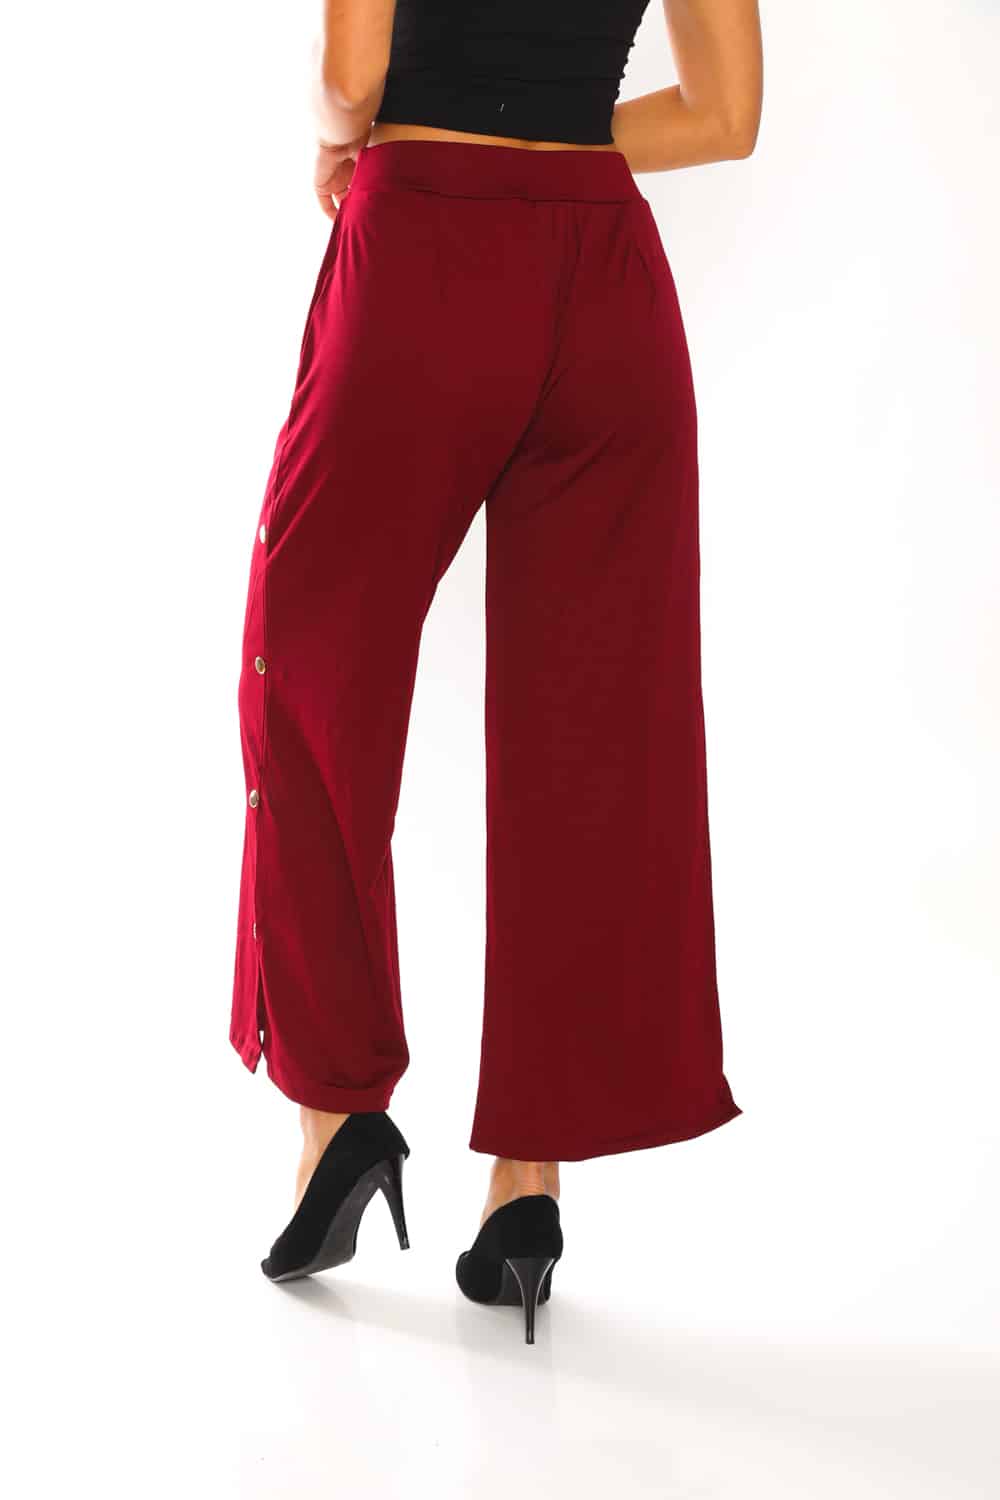 Women's Solid Side Button Trim Pants - 5